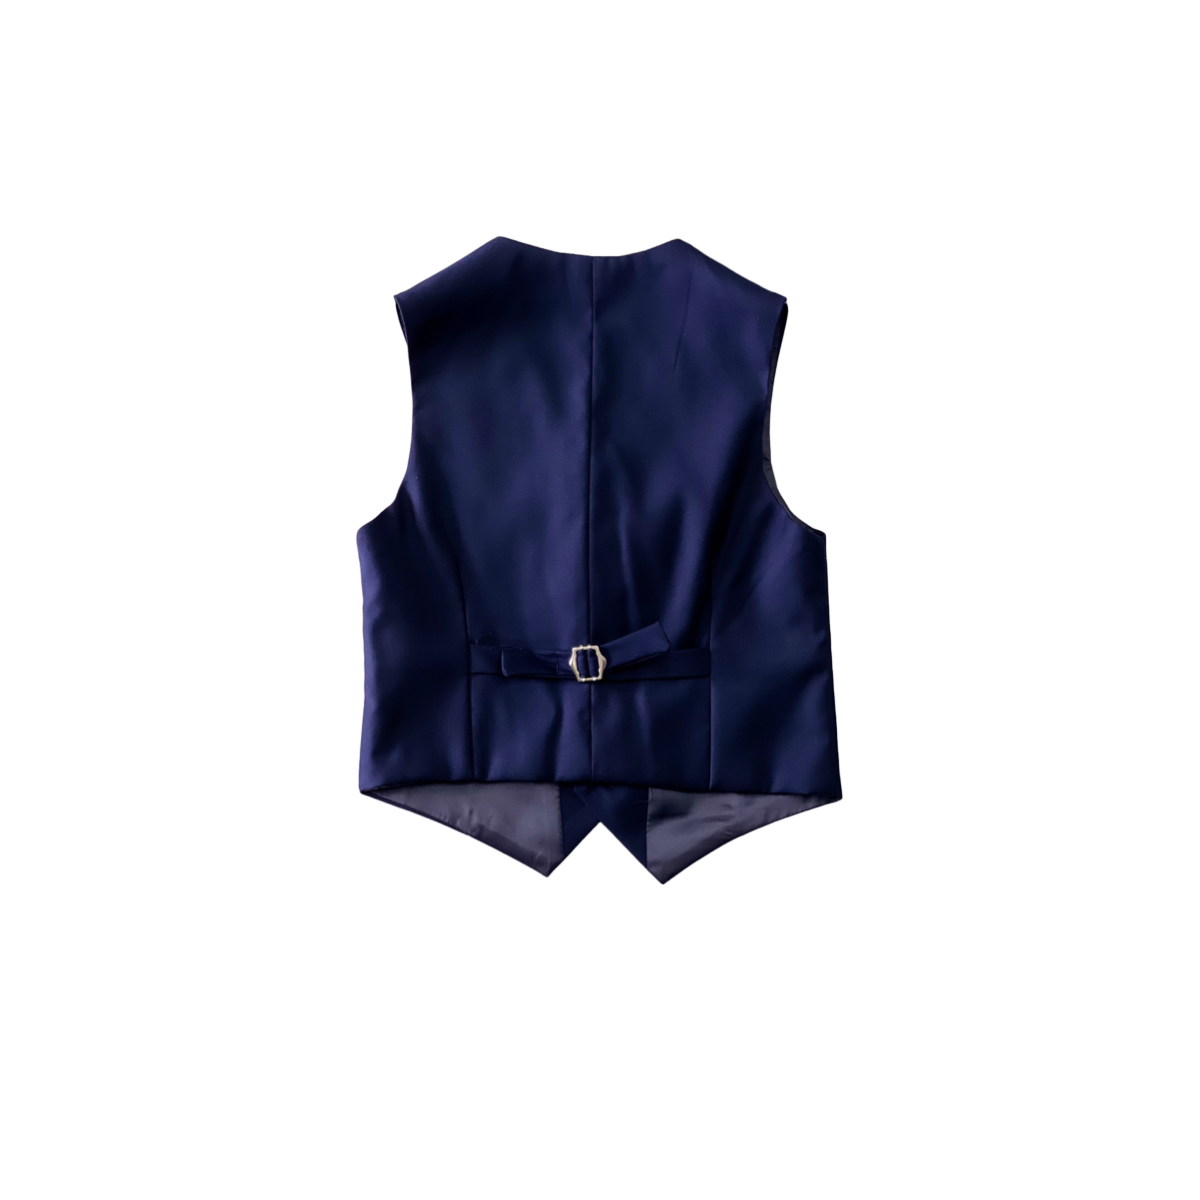 Debonair Slim-Fit Navy Blue Suit